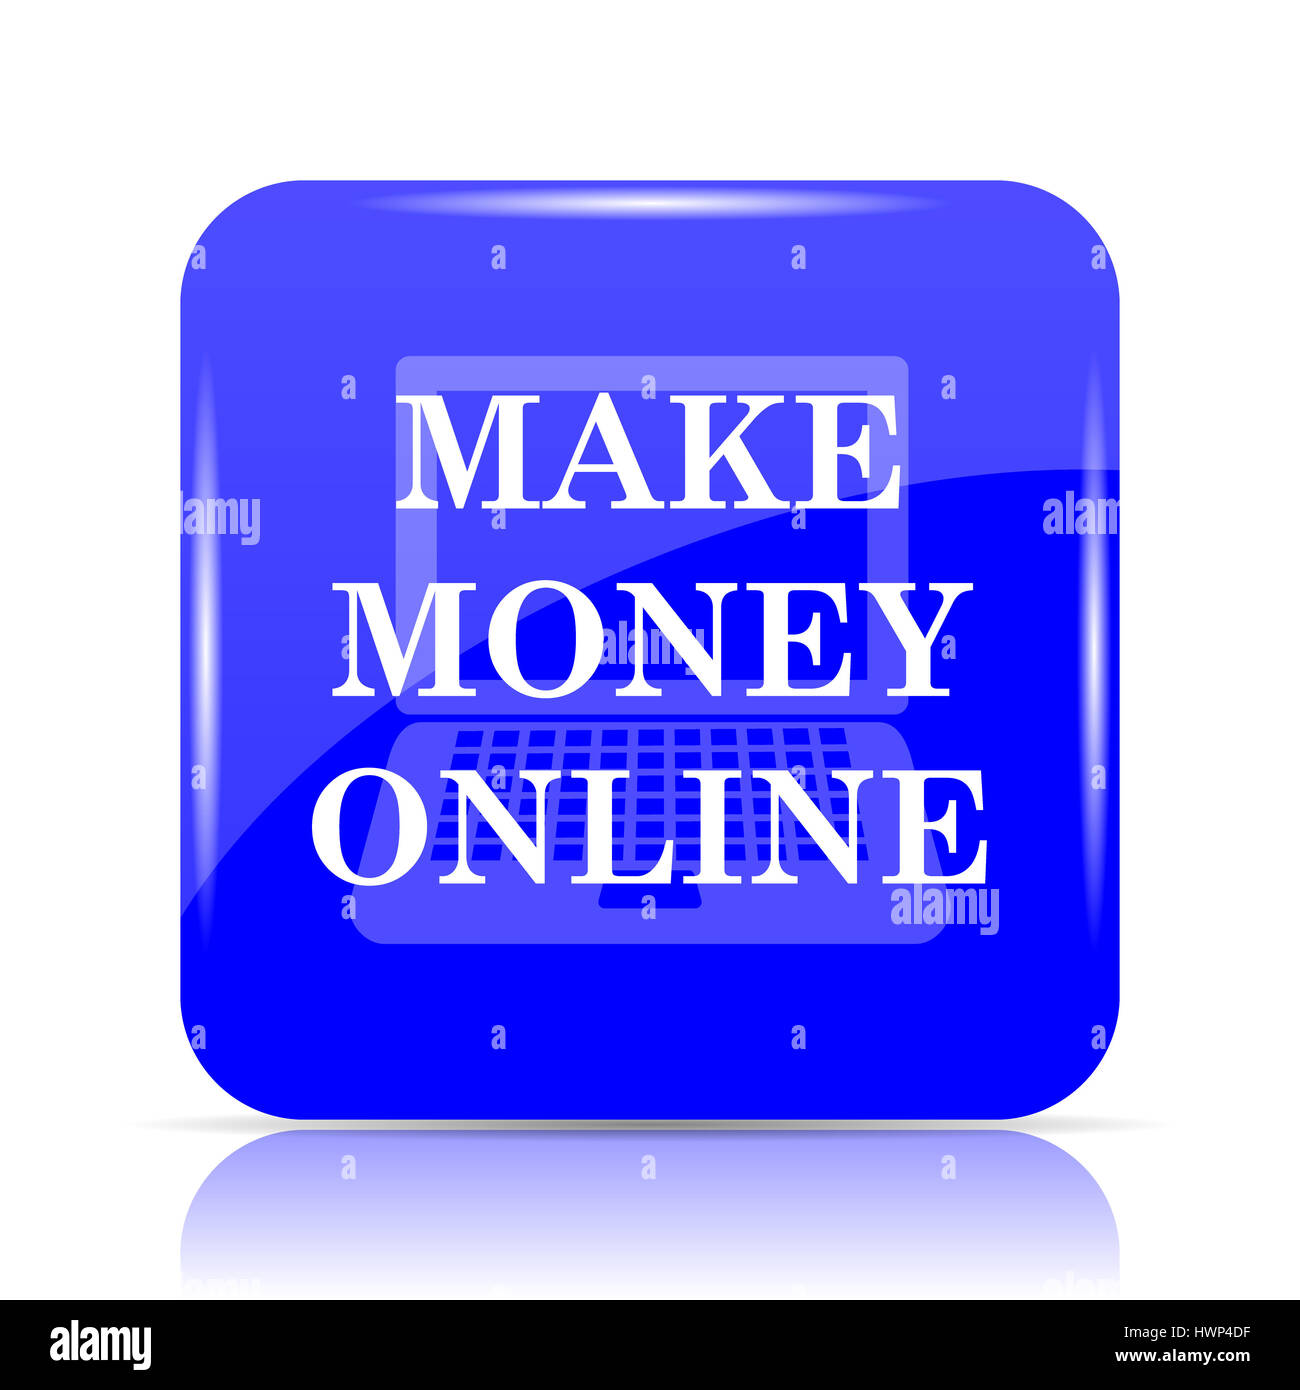 Tự do tài chính và kiếm tiền trực tuyến có thể trở thành hiện thực của bạn nếu bạn biết cách làm. Chúng tôi sẽ chỉ cho bạn cách bắt đầu!